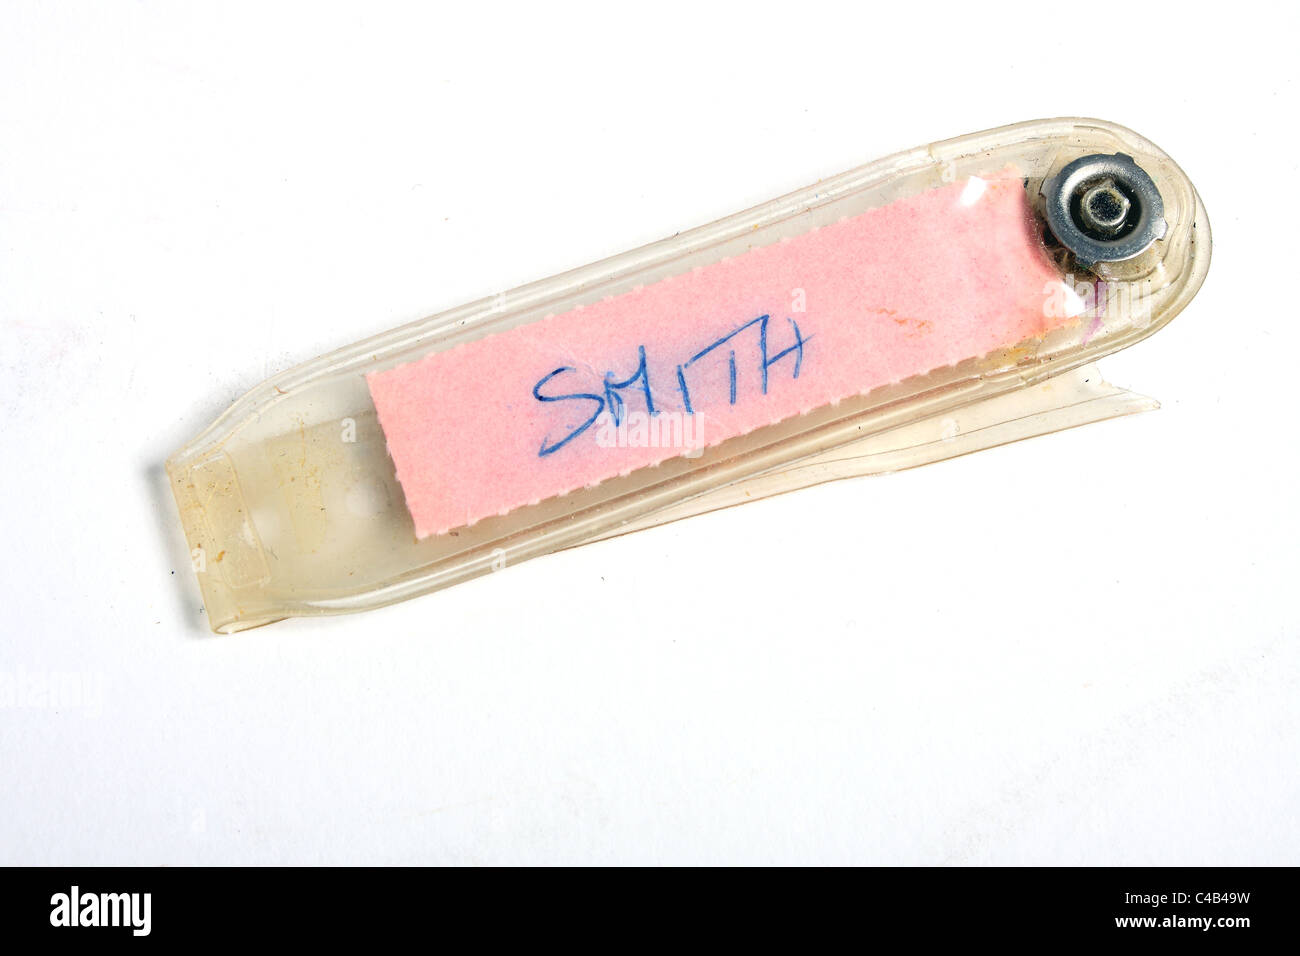 Ein Armband-ID Namensschild für ein neugeborenes Baby mit dem Namen Smith. Dies ist eine alte altmodische Namensschild von 1981. Stockfoto